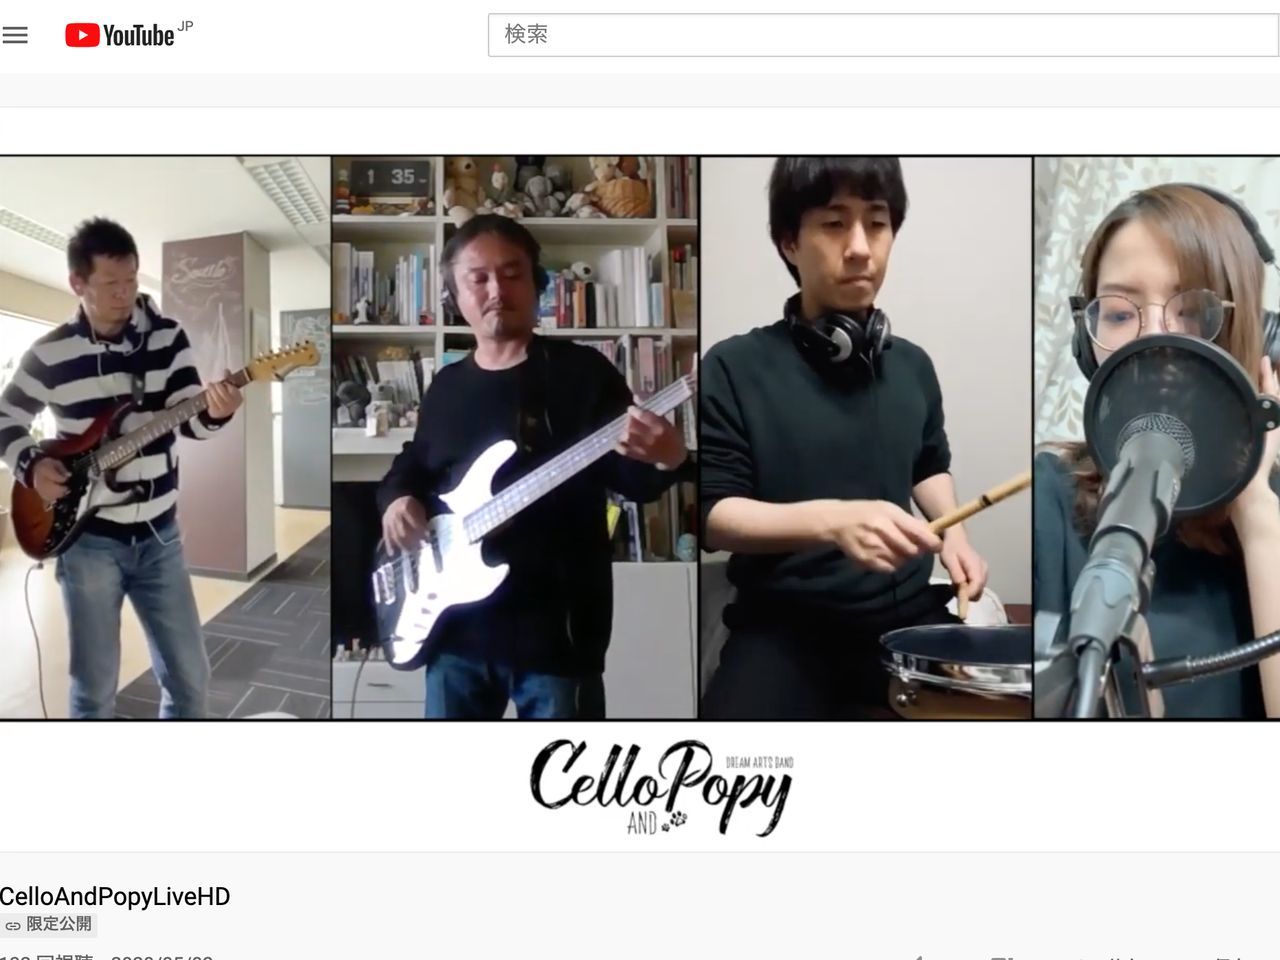 社内で リモートバンドやってみた 動画を制作 協創で脱コロナ疲れを Cnet Japan